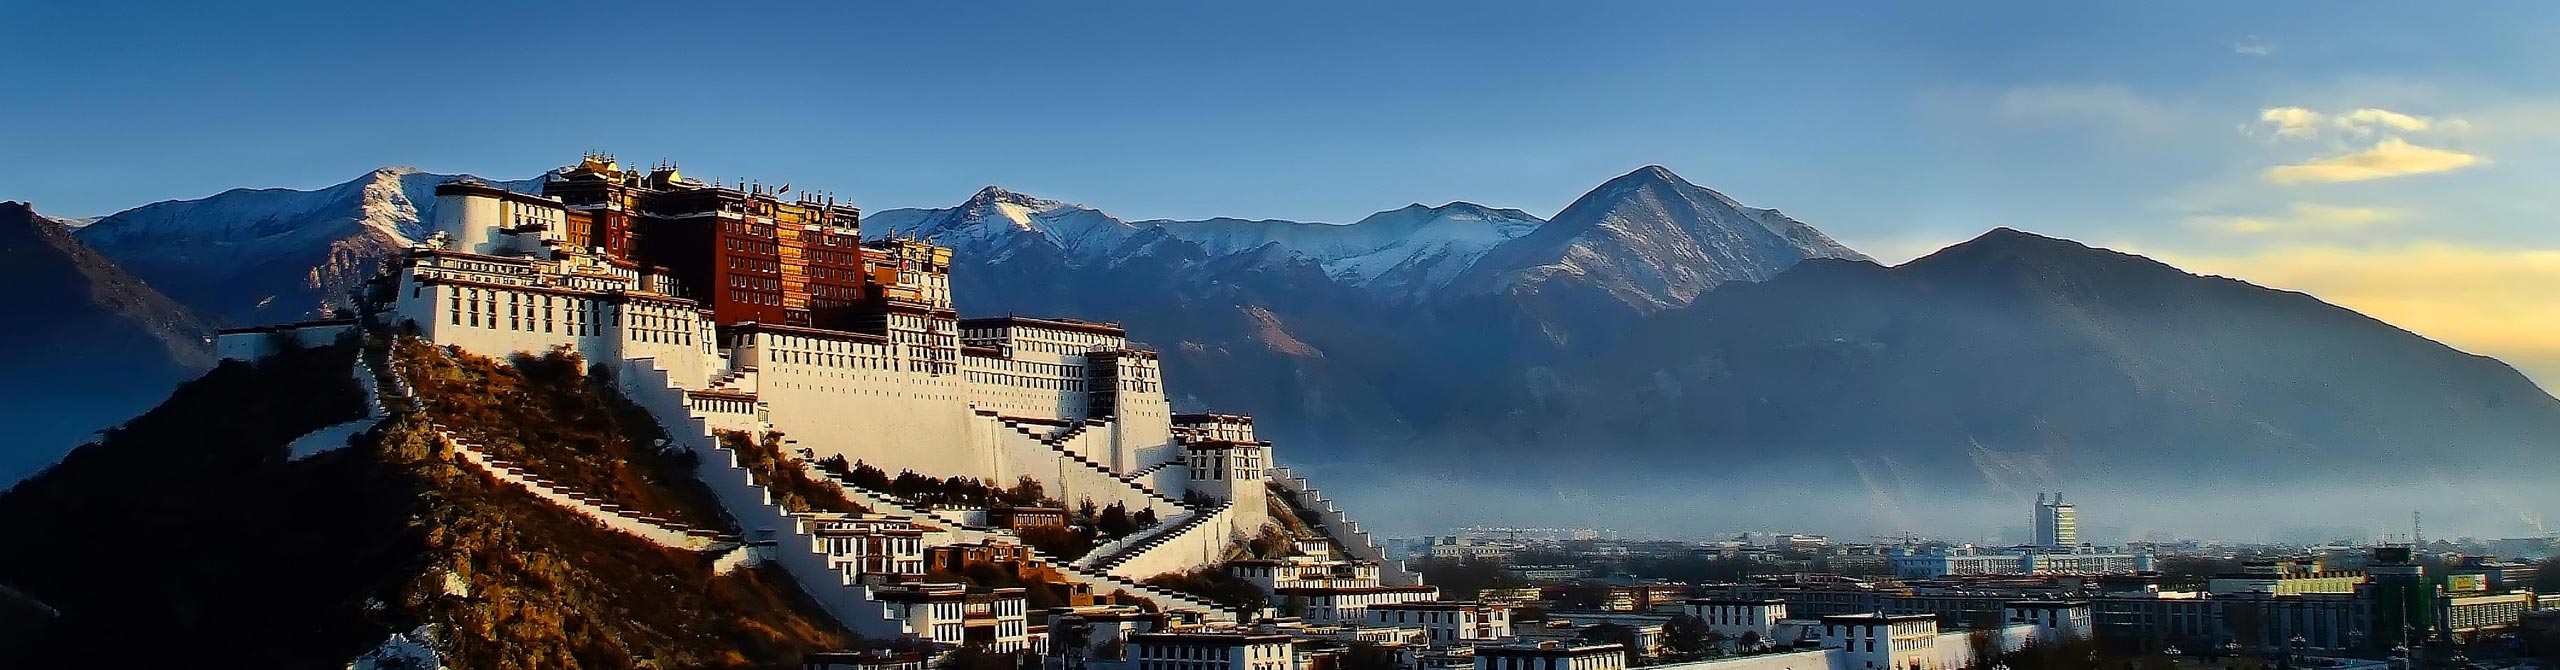 2-Day Lhasa Tour